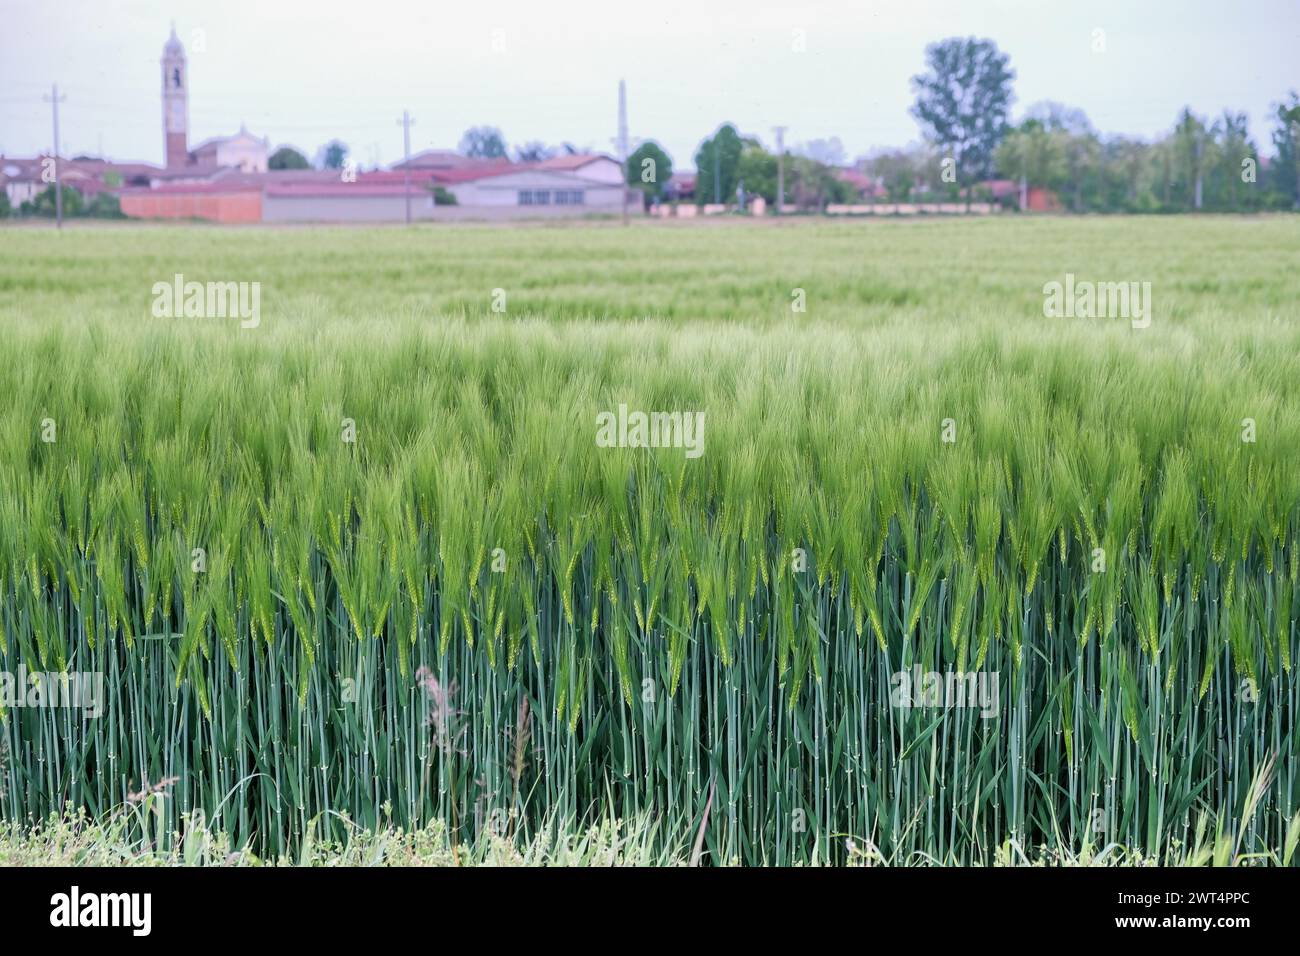 Vue rapprochée des épis de blé vert se balançant dans un champ un jour ensoleillé. Garlasco, Lombardie. Italie Banque D'Images